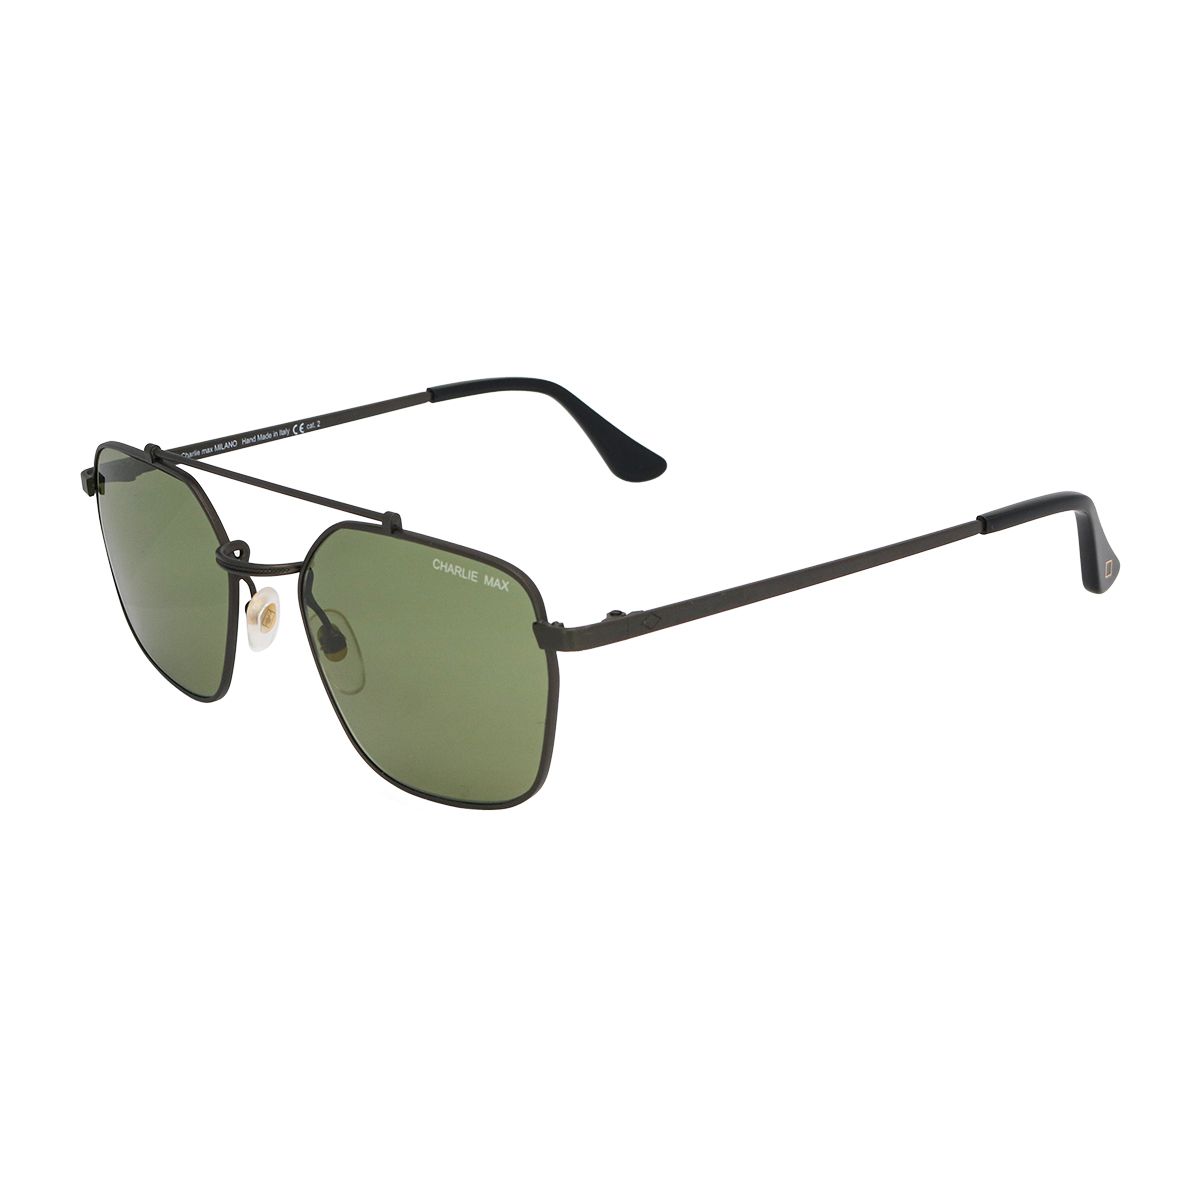 QUADRONNO Square Sunglasses FU-G62 - size 53